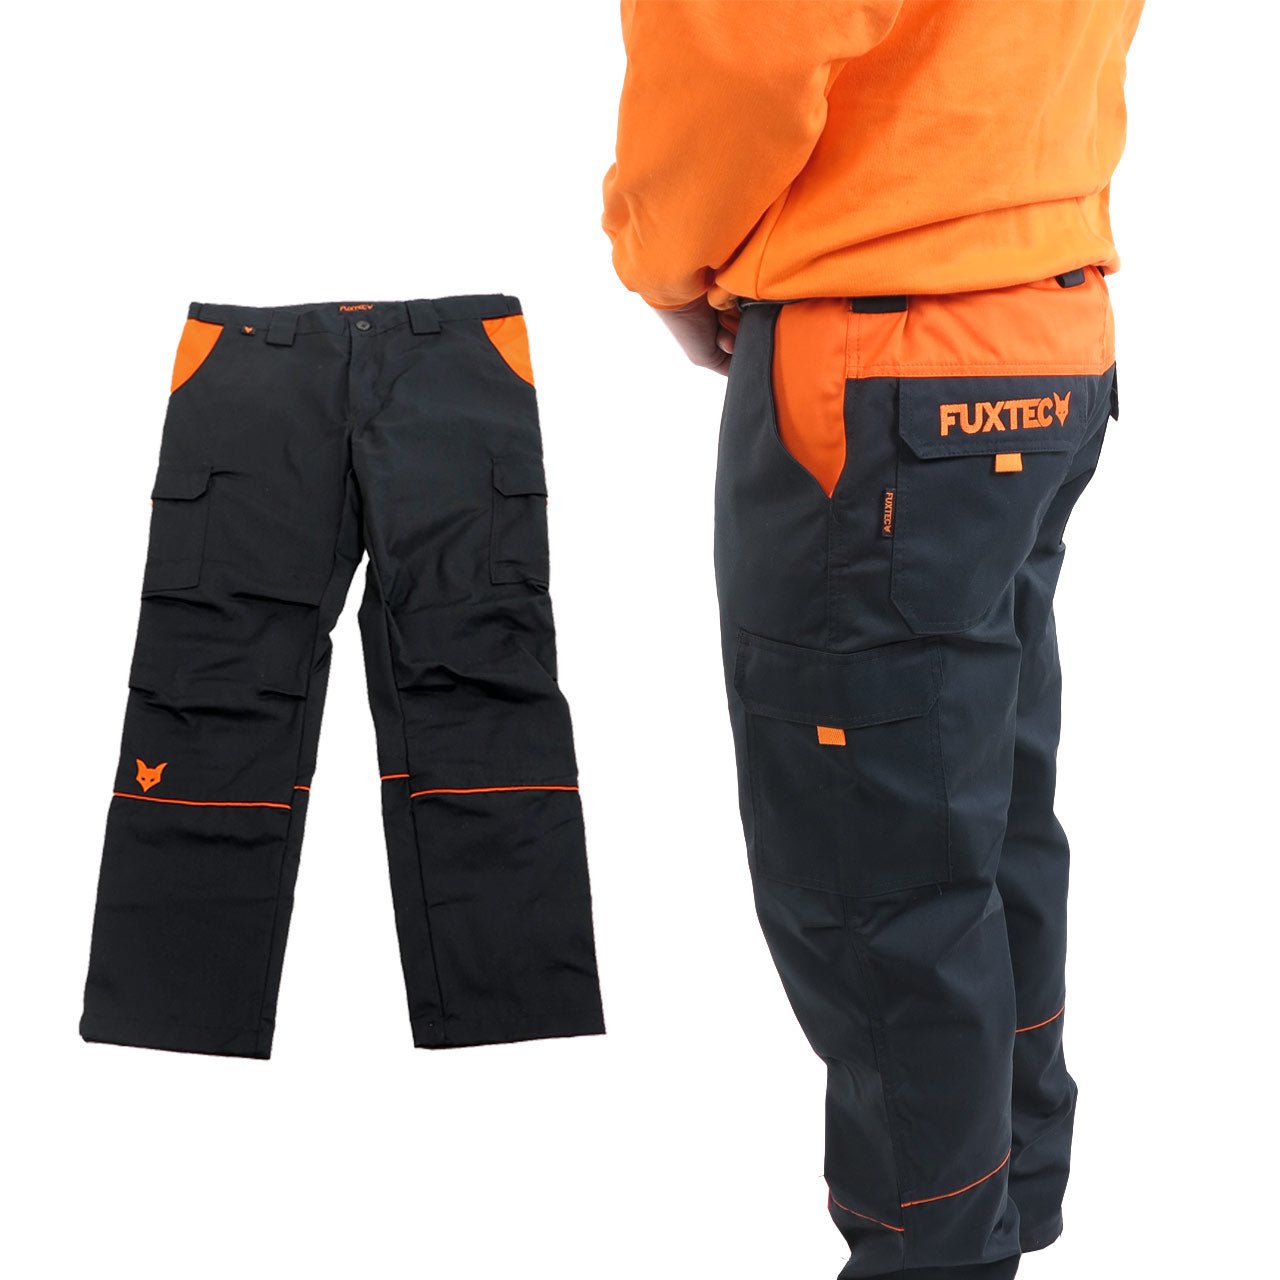 FUXTEC work pants